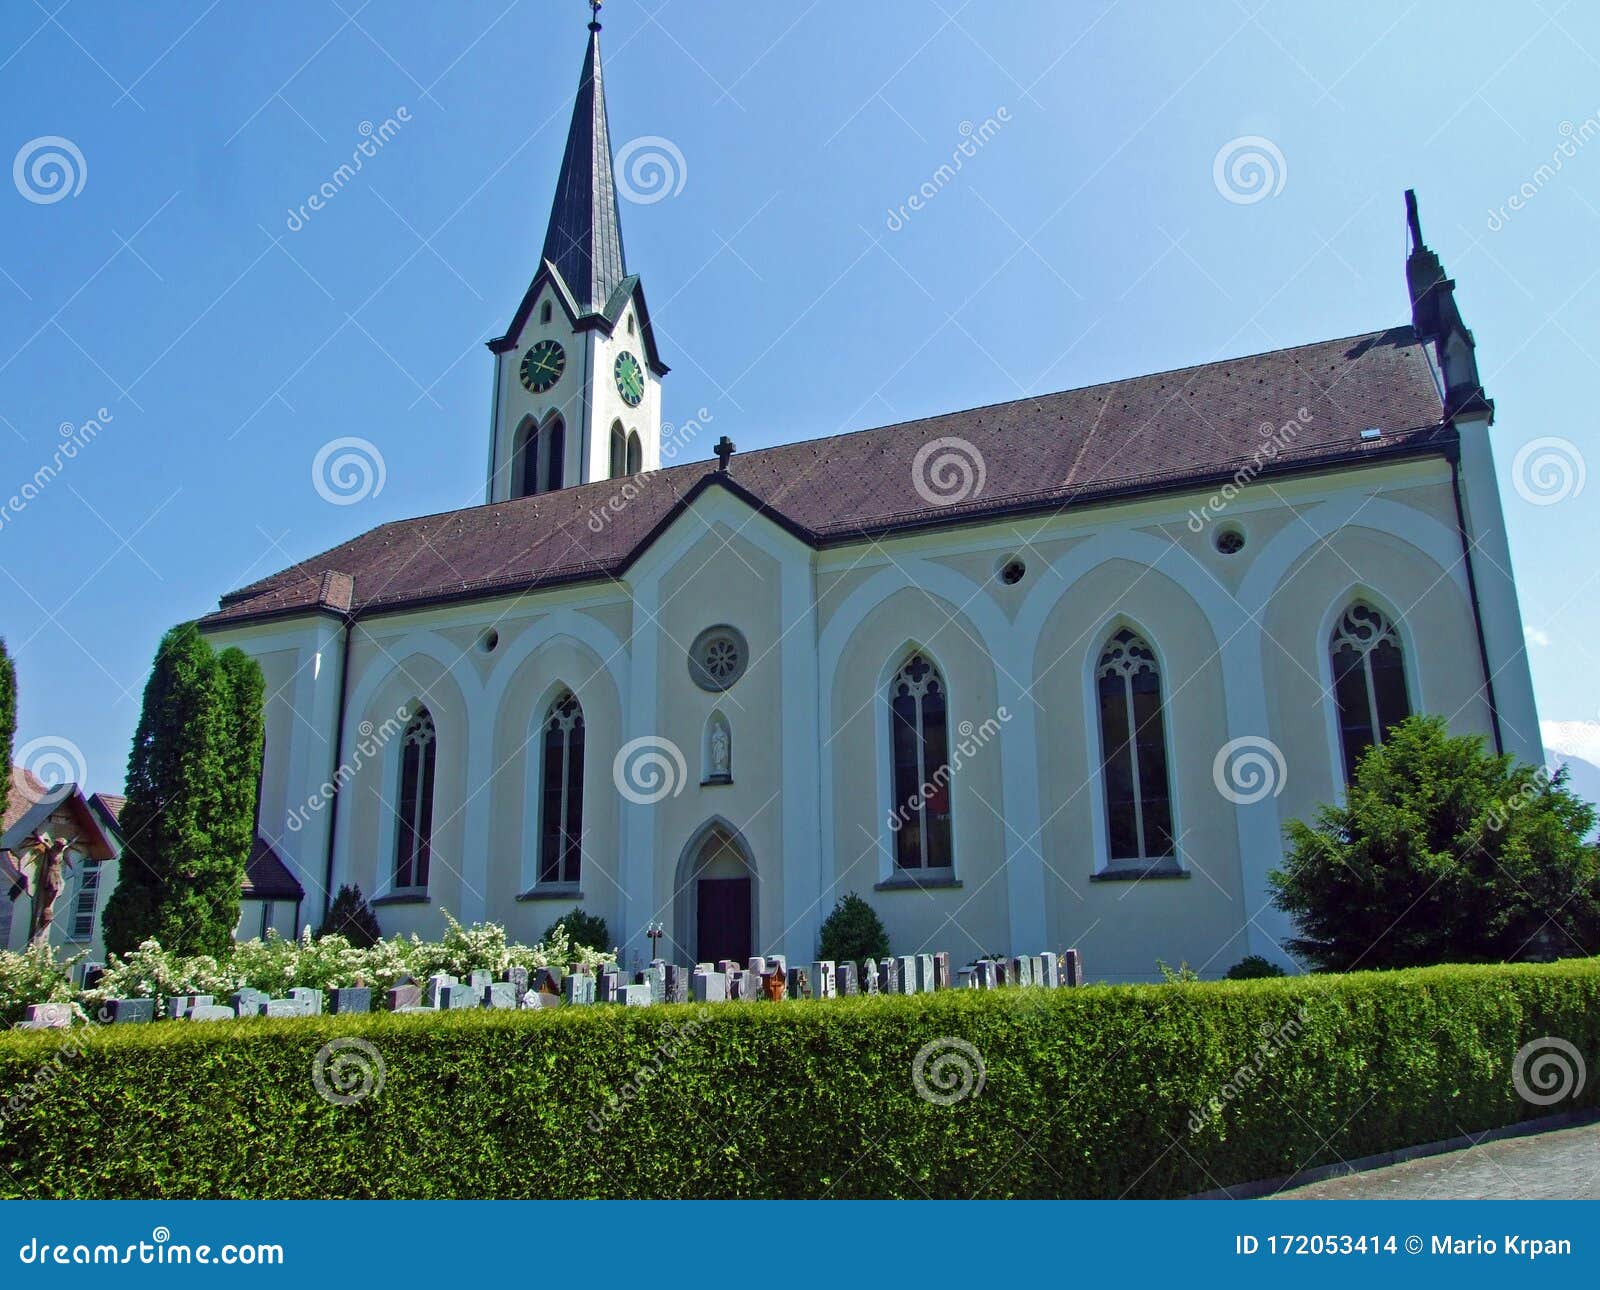 Katholische Kirche • Church »